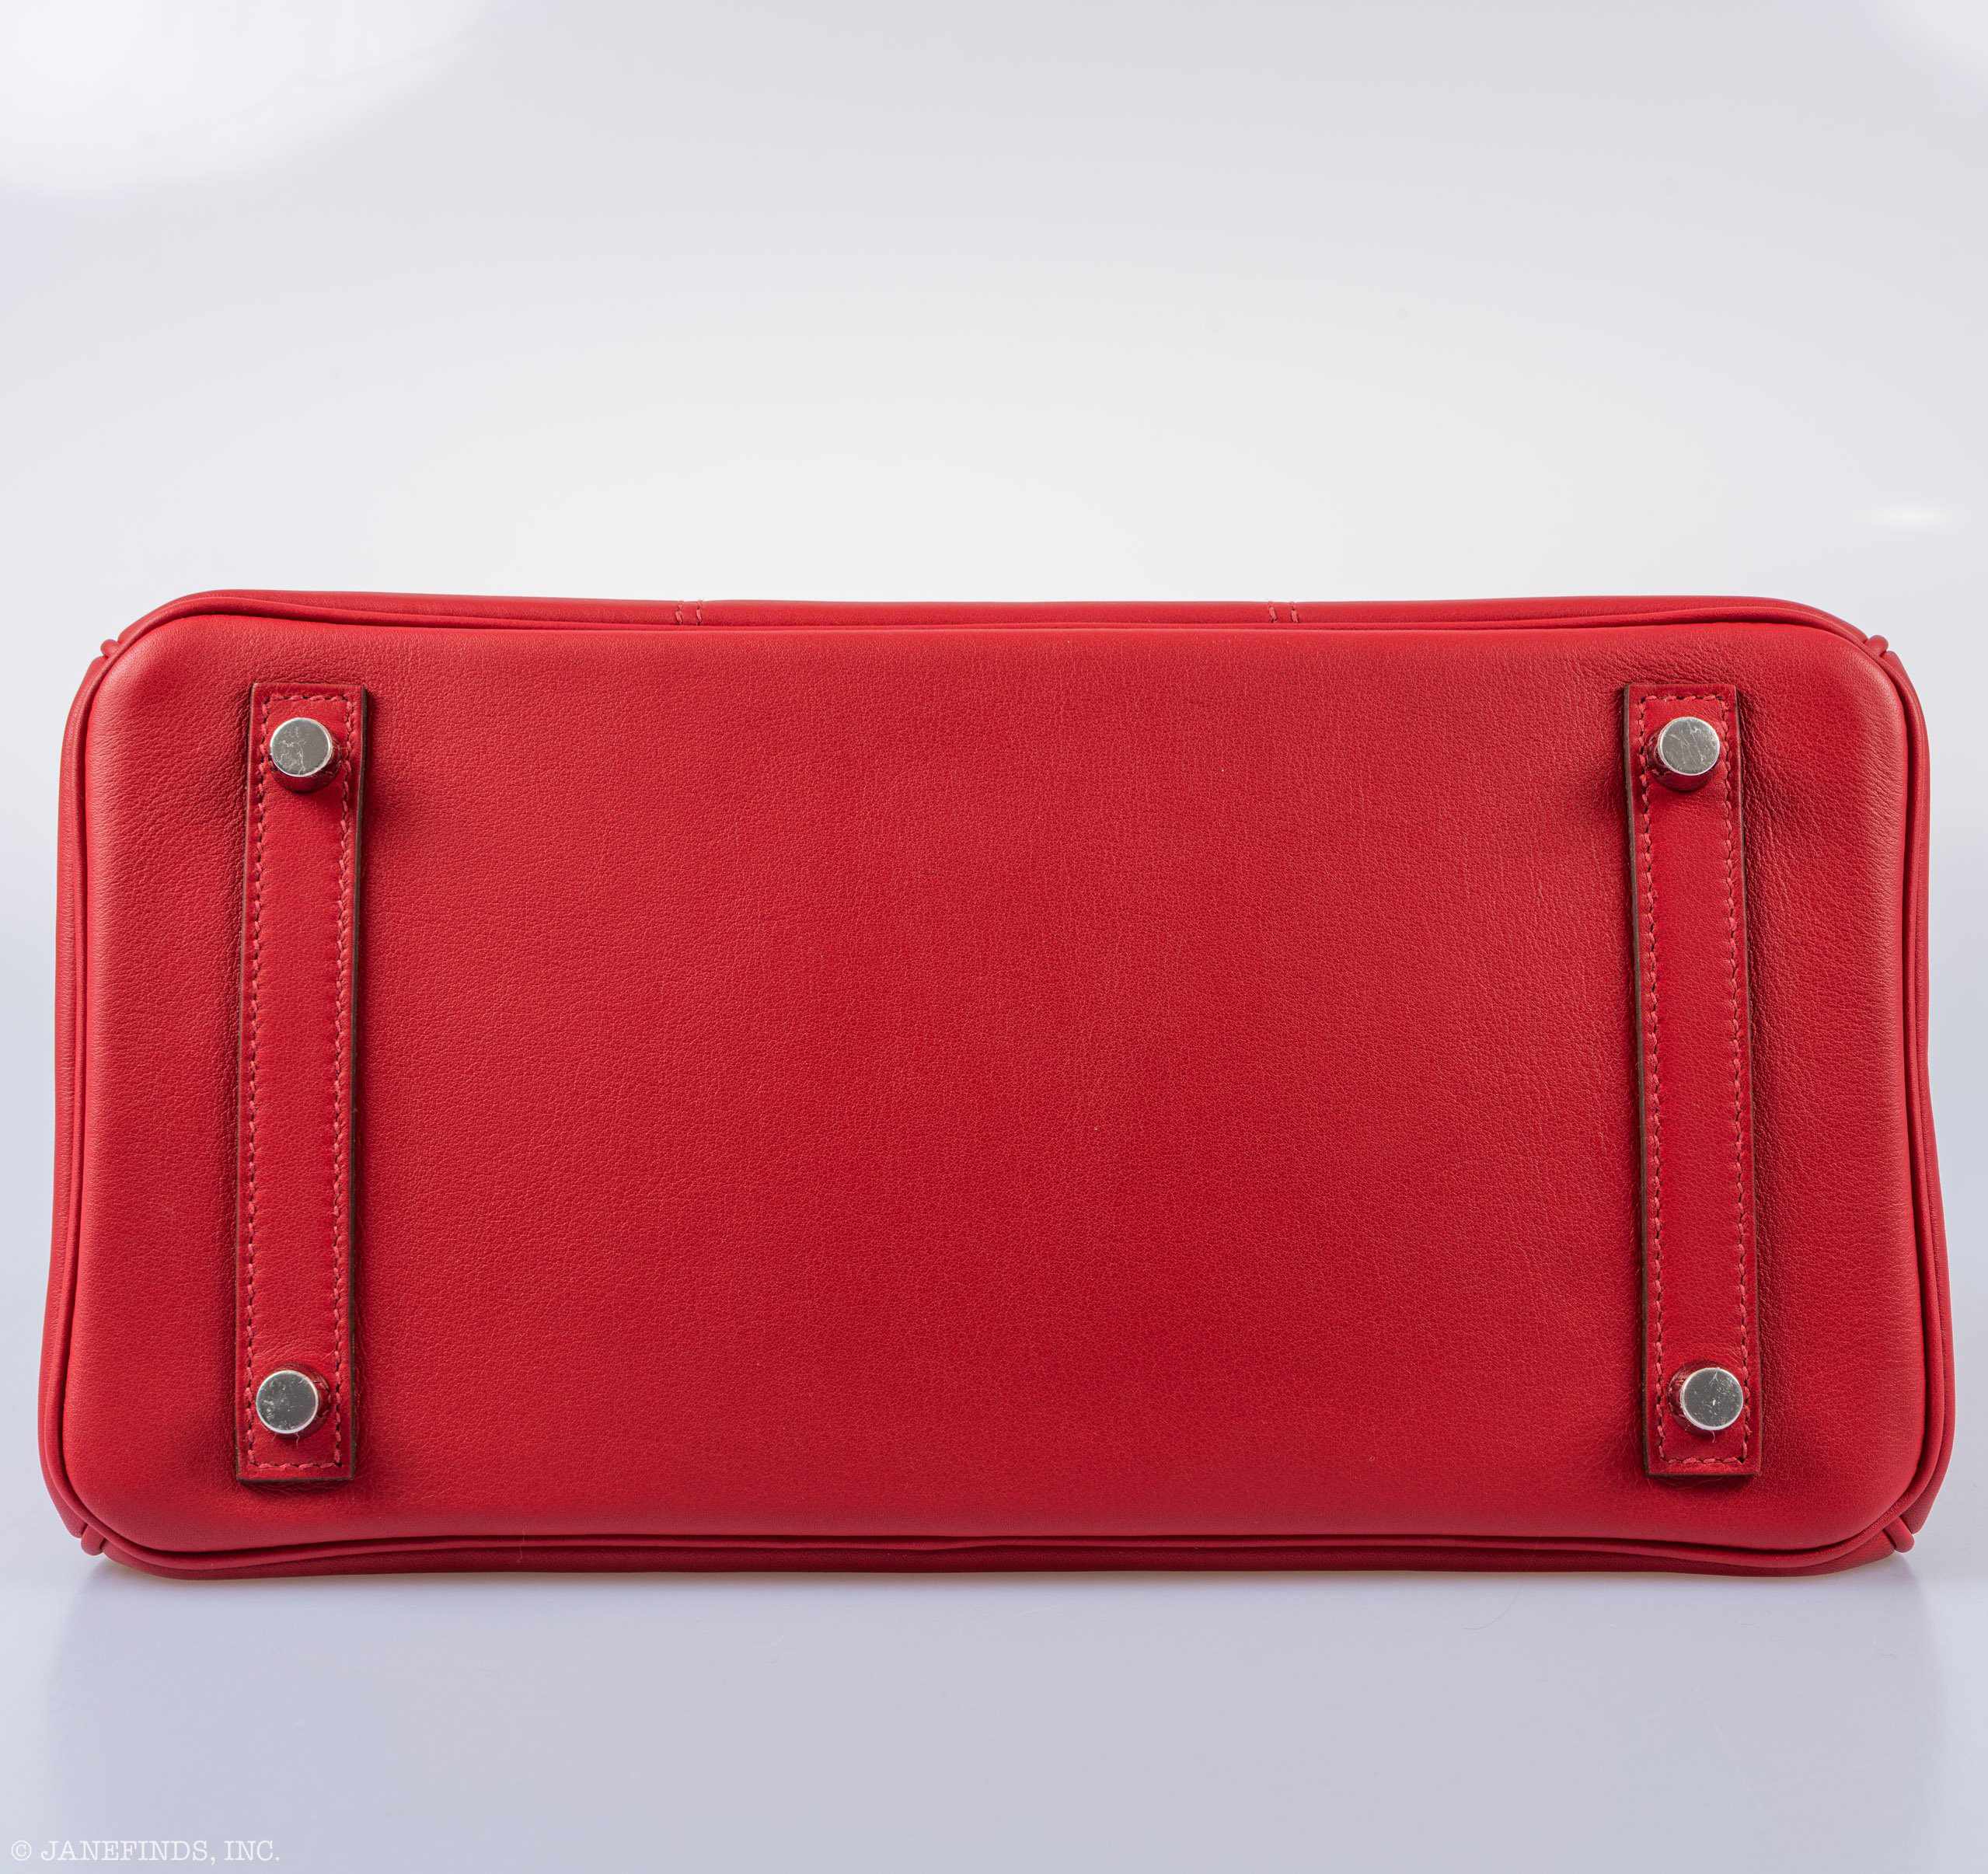 Hermès Birkin 30 Tressage Rouge de Coeur Rouge H Swift & Epsom Palladium Hardware